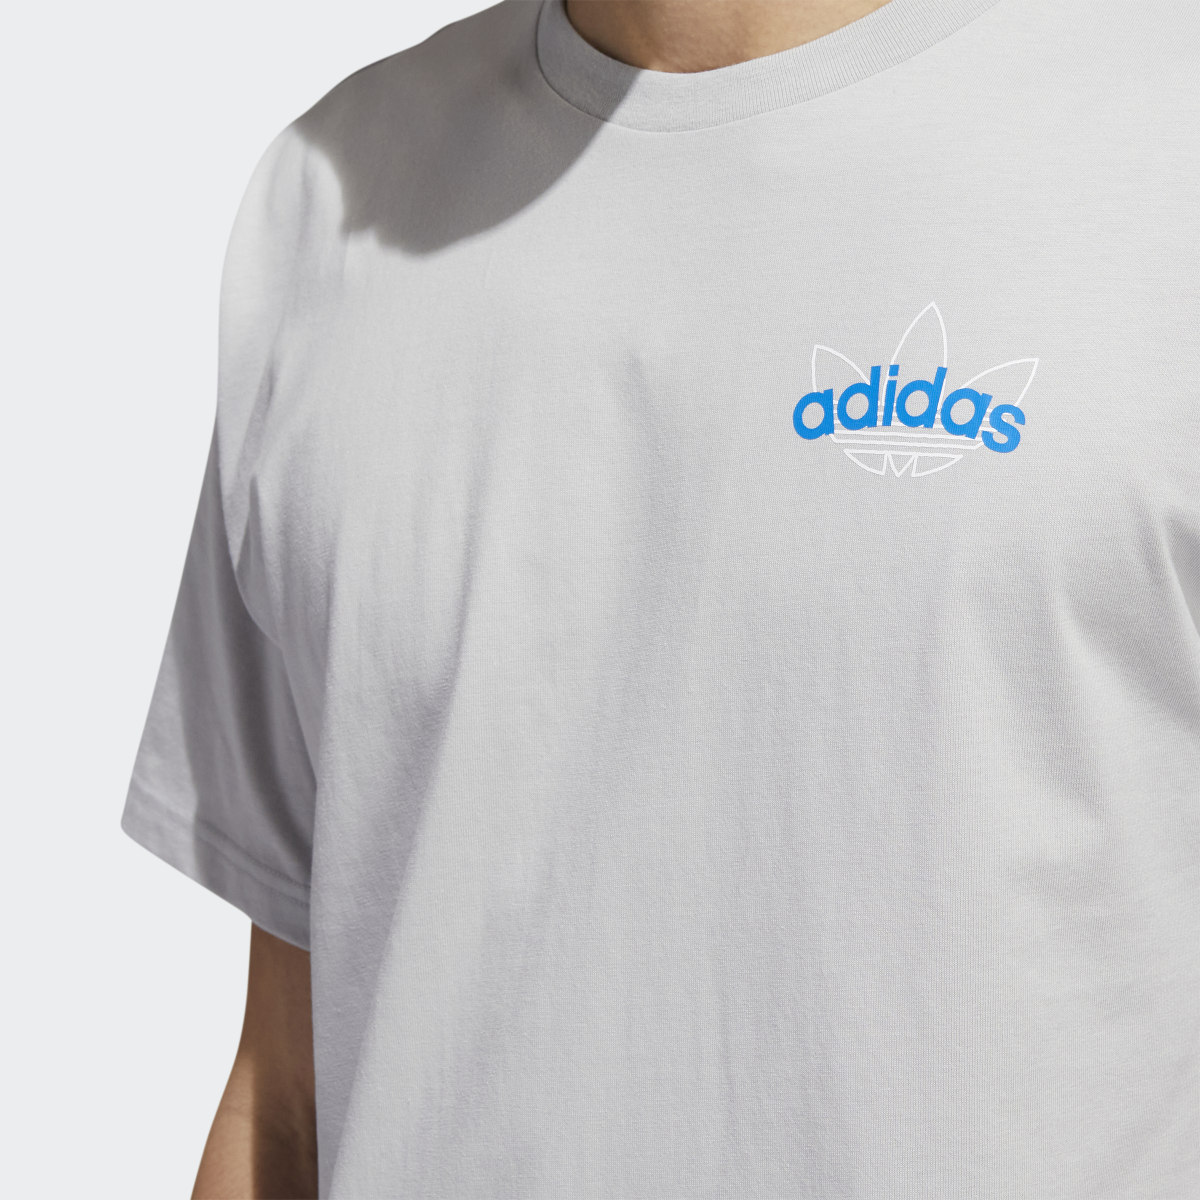 Adidas T-shirt Athletic Club. 6